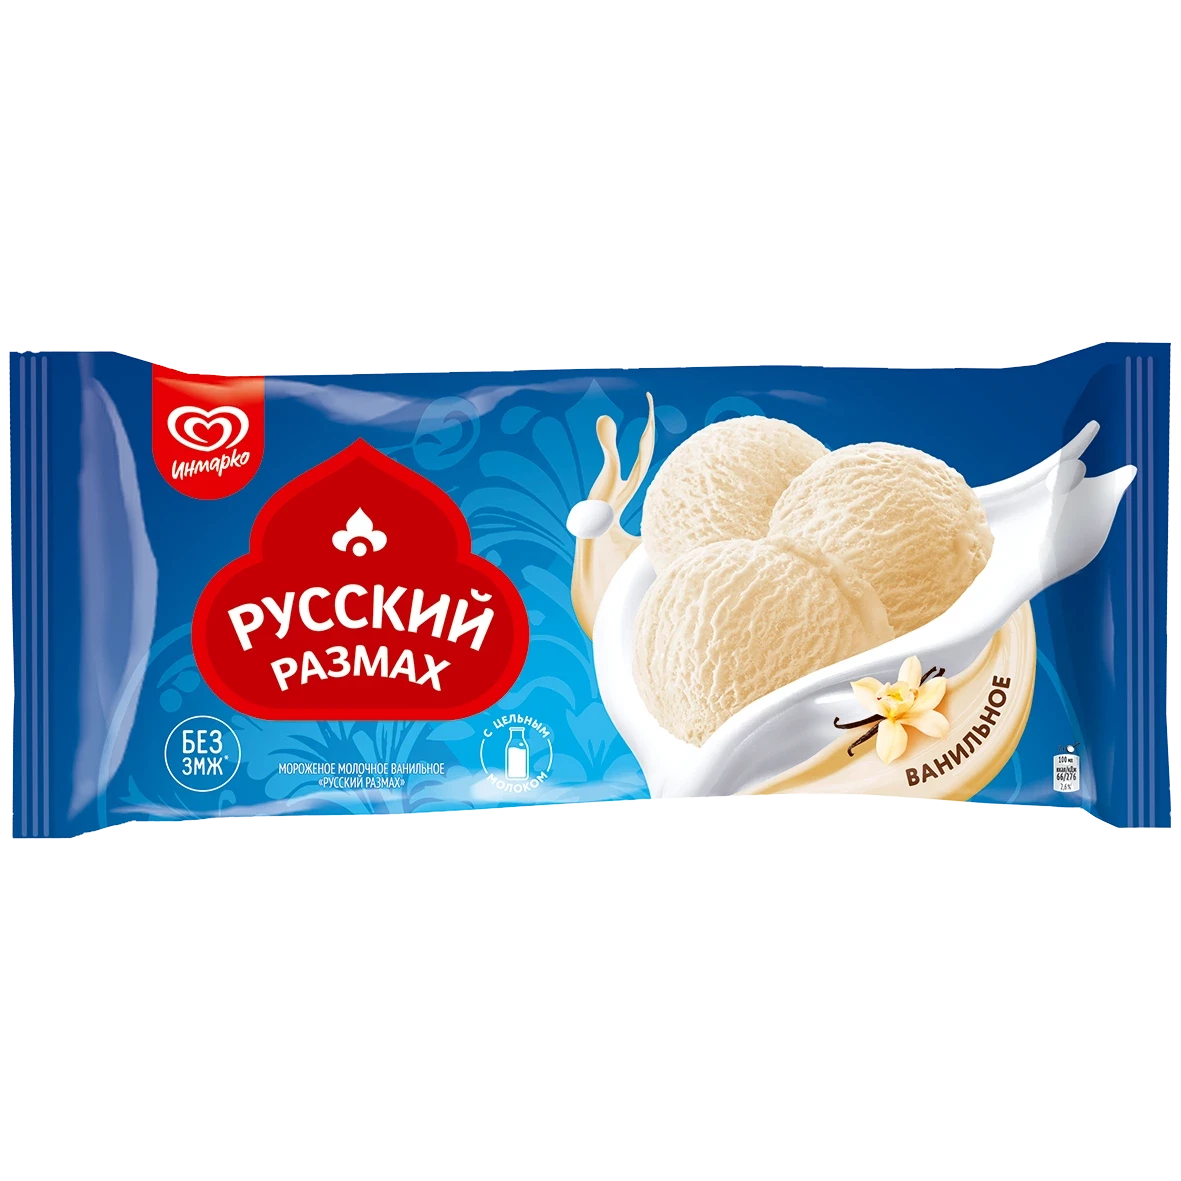 Русский Размах мороженое молочное ванильное, весовое 450 гр